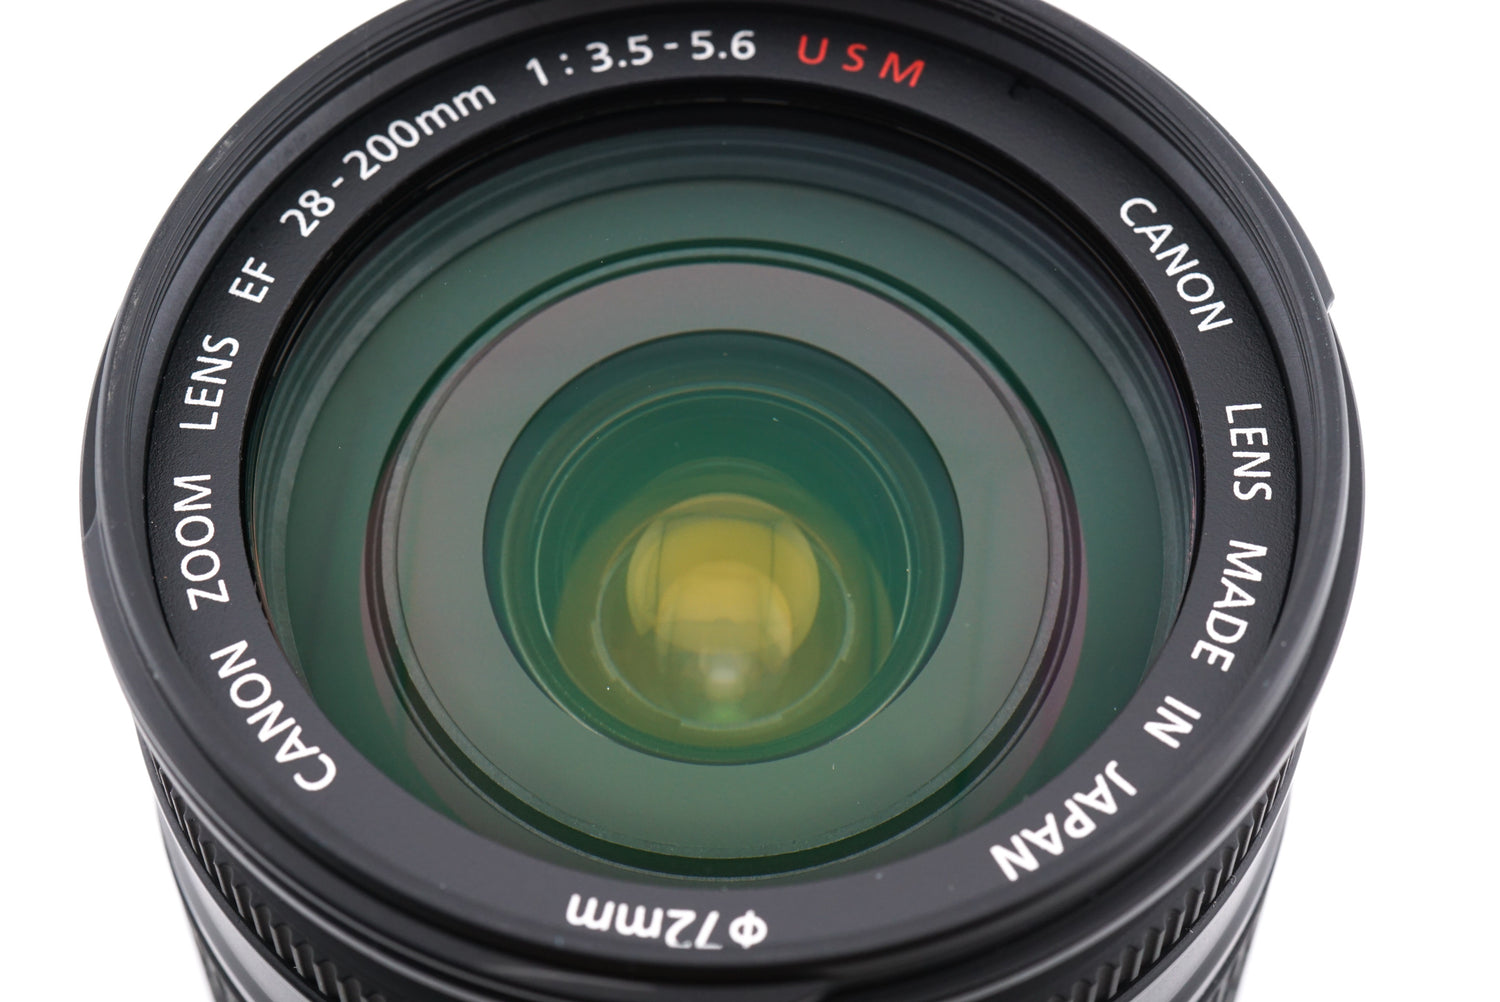 Canon ZOOM LENS EF 28-200mm F3.5-5.6 USM